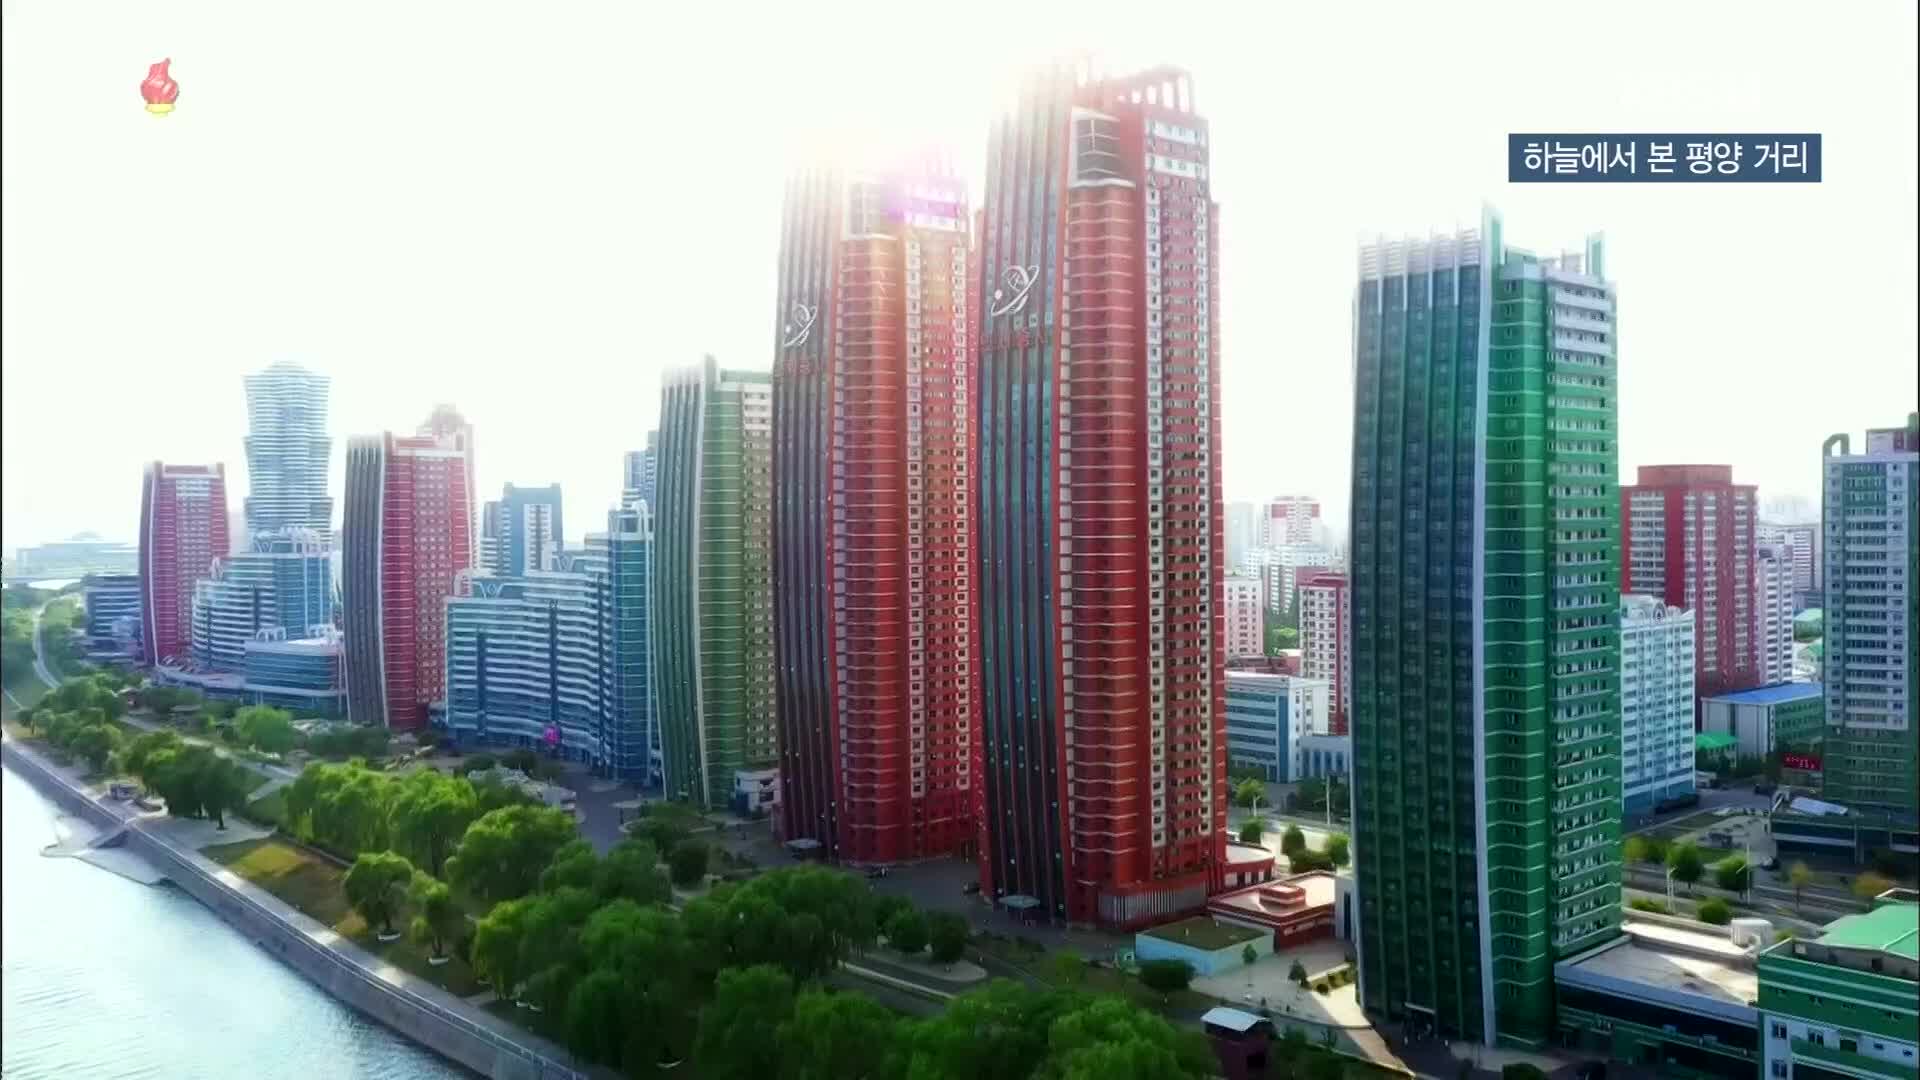 [북한 영상] 하늘에서 본 평양 거리